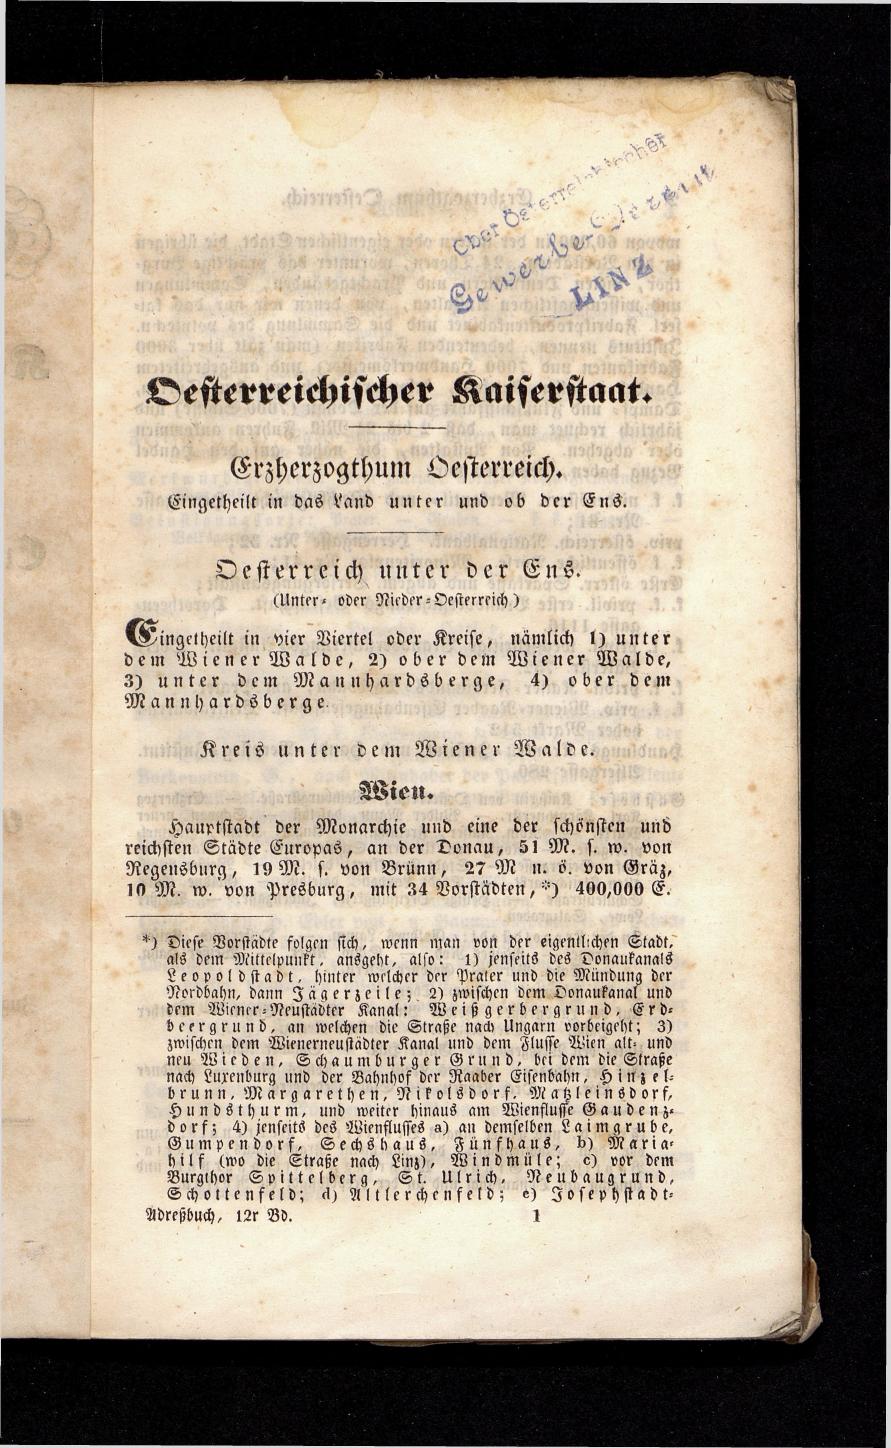 Grosses Adressbuch der Kaufleute. No. 13. Oesterreich ober u. unter der Enns 1844 - Seite 5